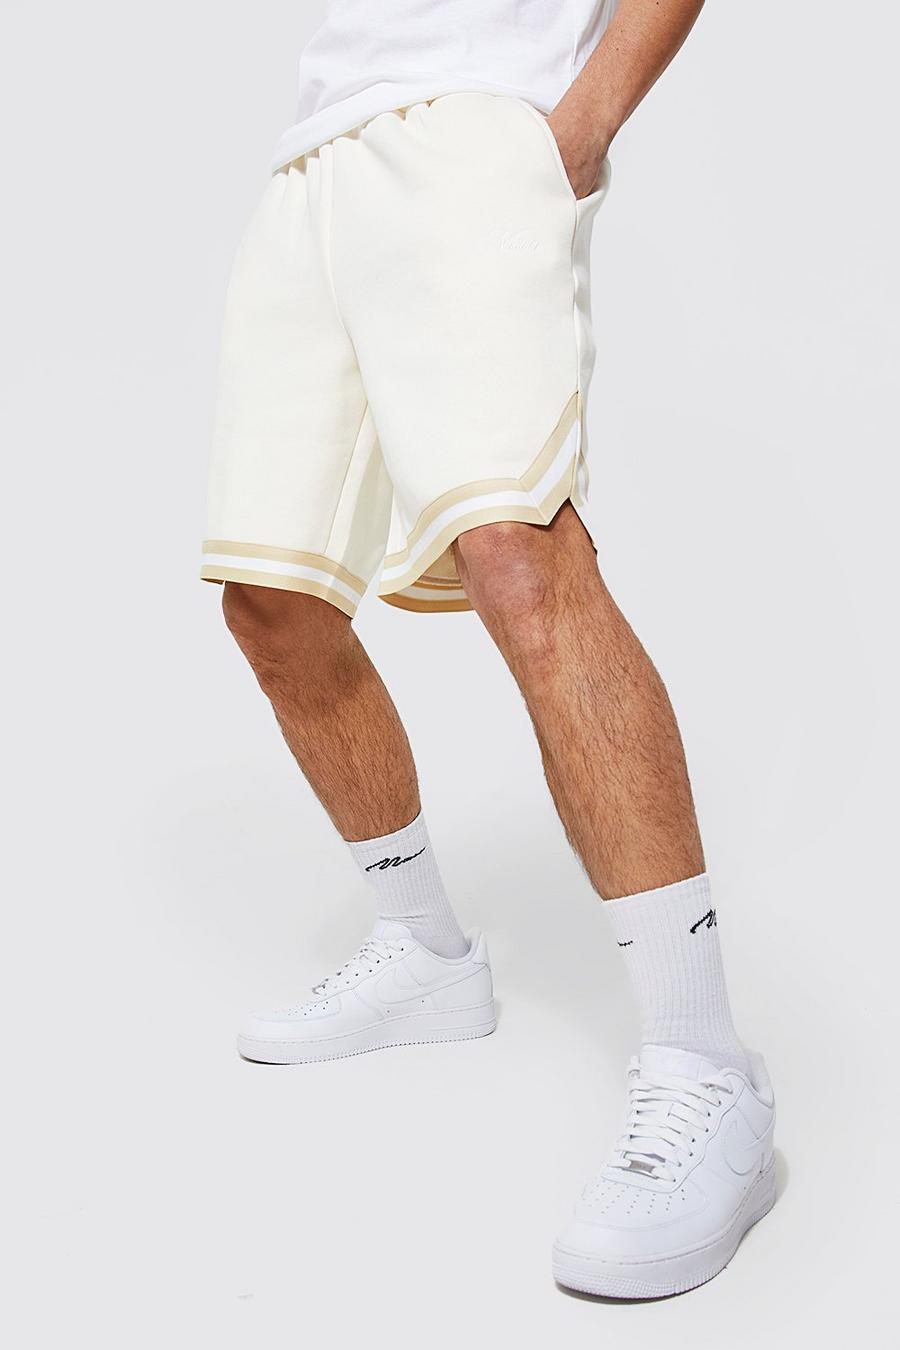 Pantalón corto oversize MAN de baloncesto con cinta, Ecru bianco